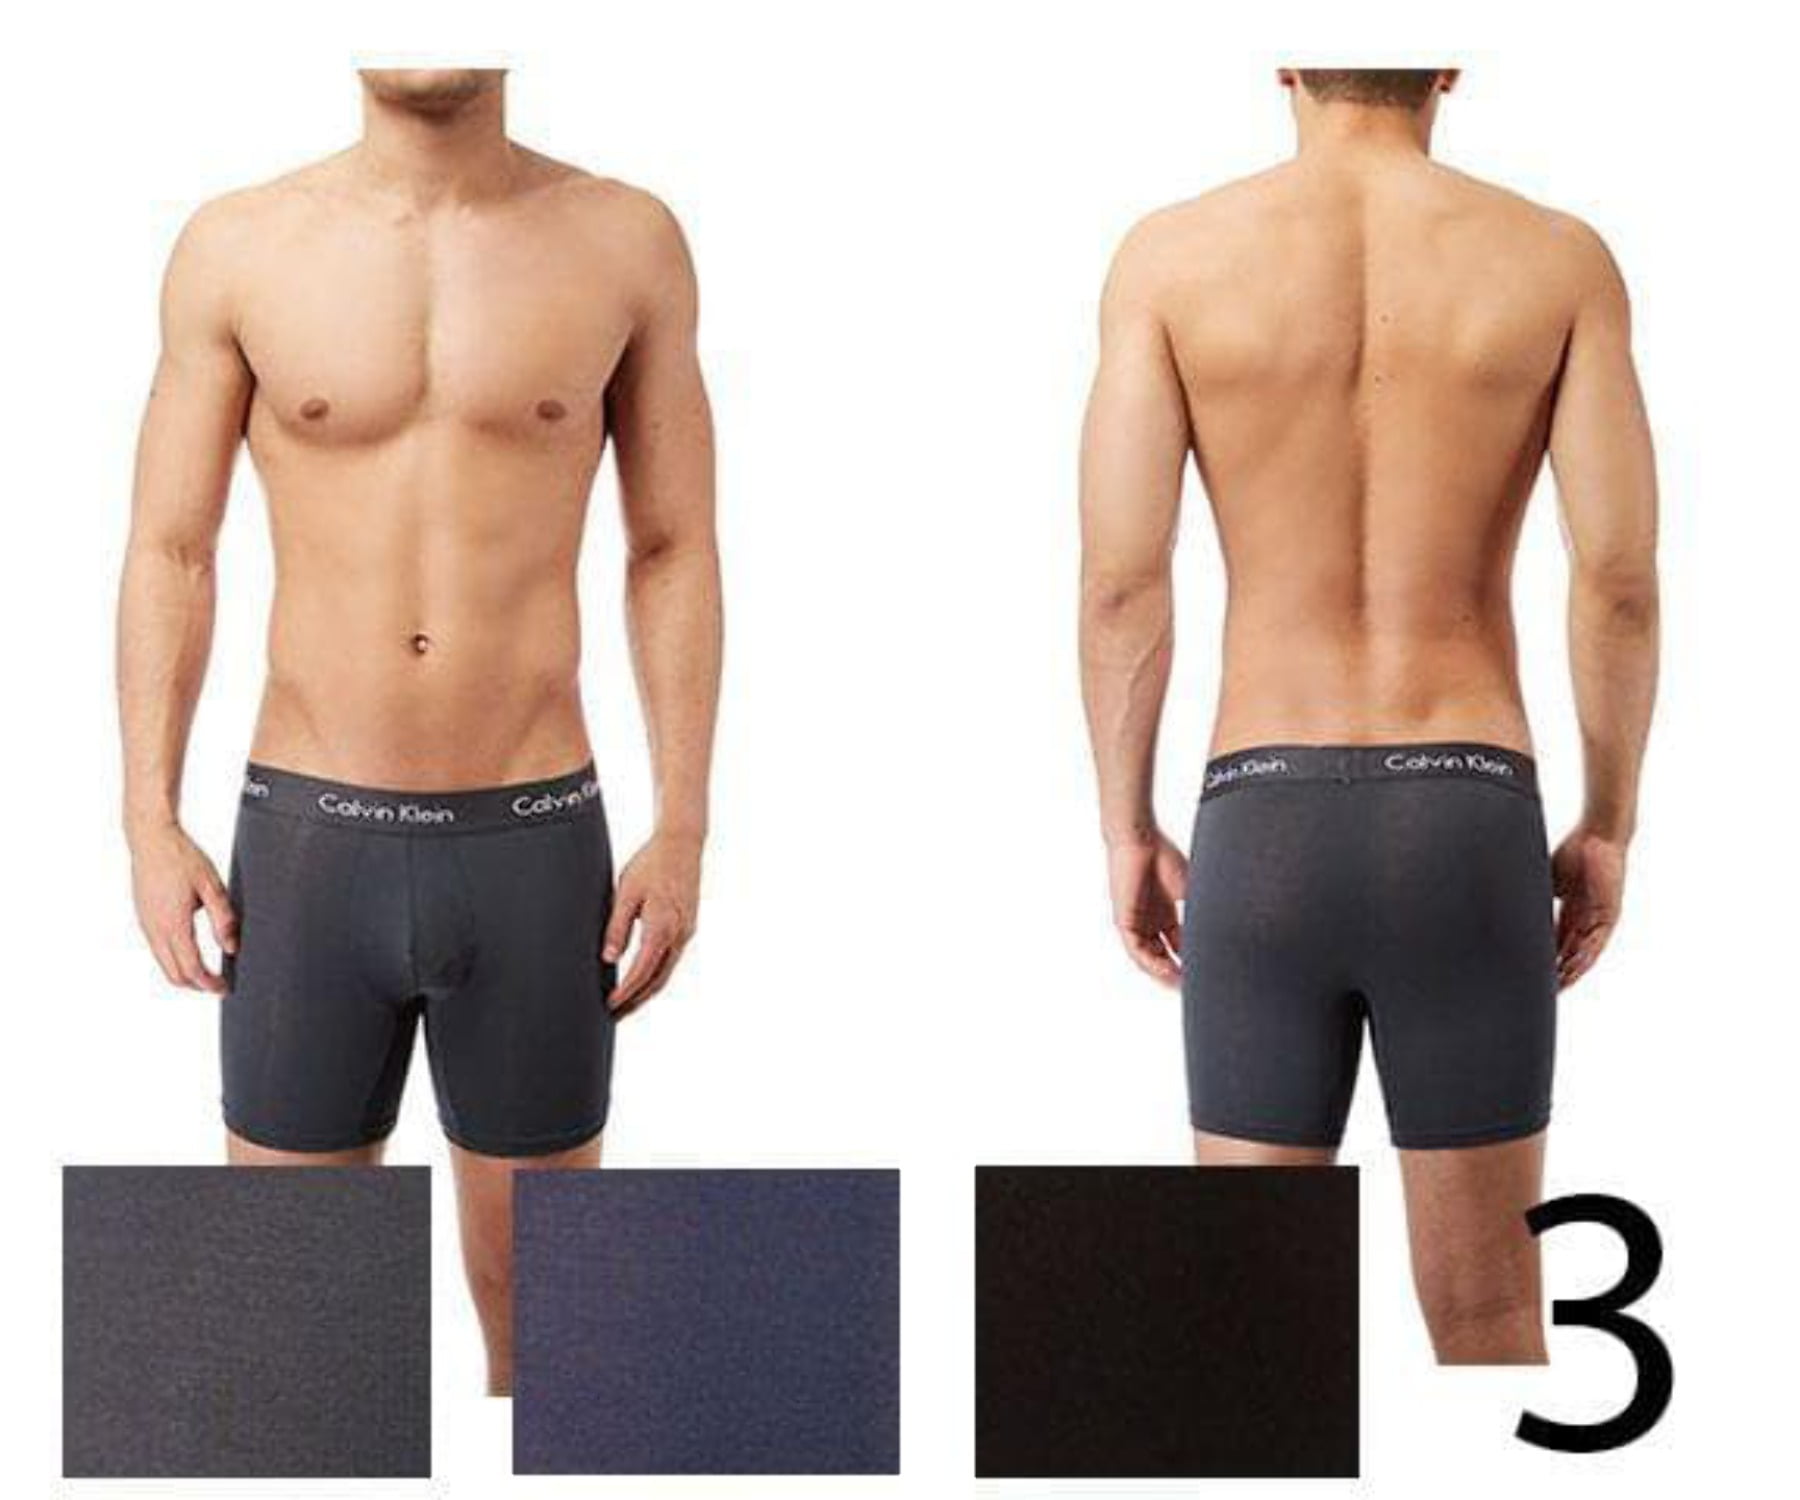 Calvin Klein NB1427-461 Body Modal Boxer Brief 3 Pack 